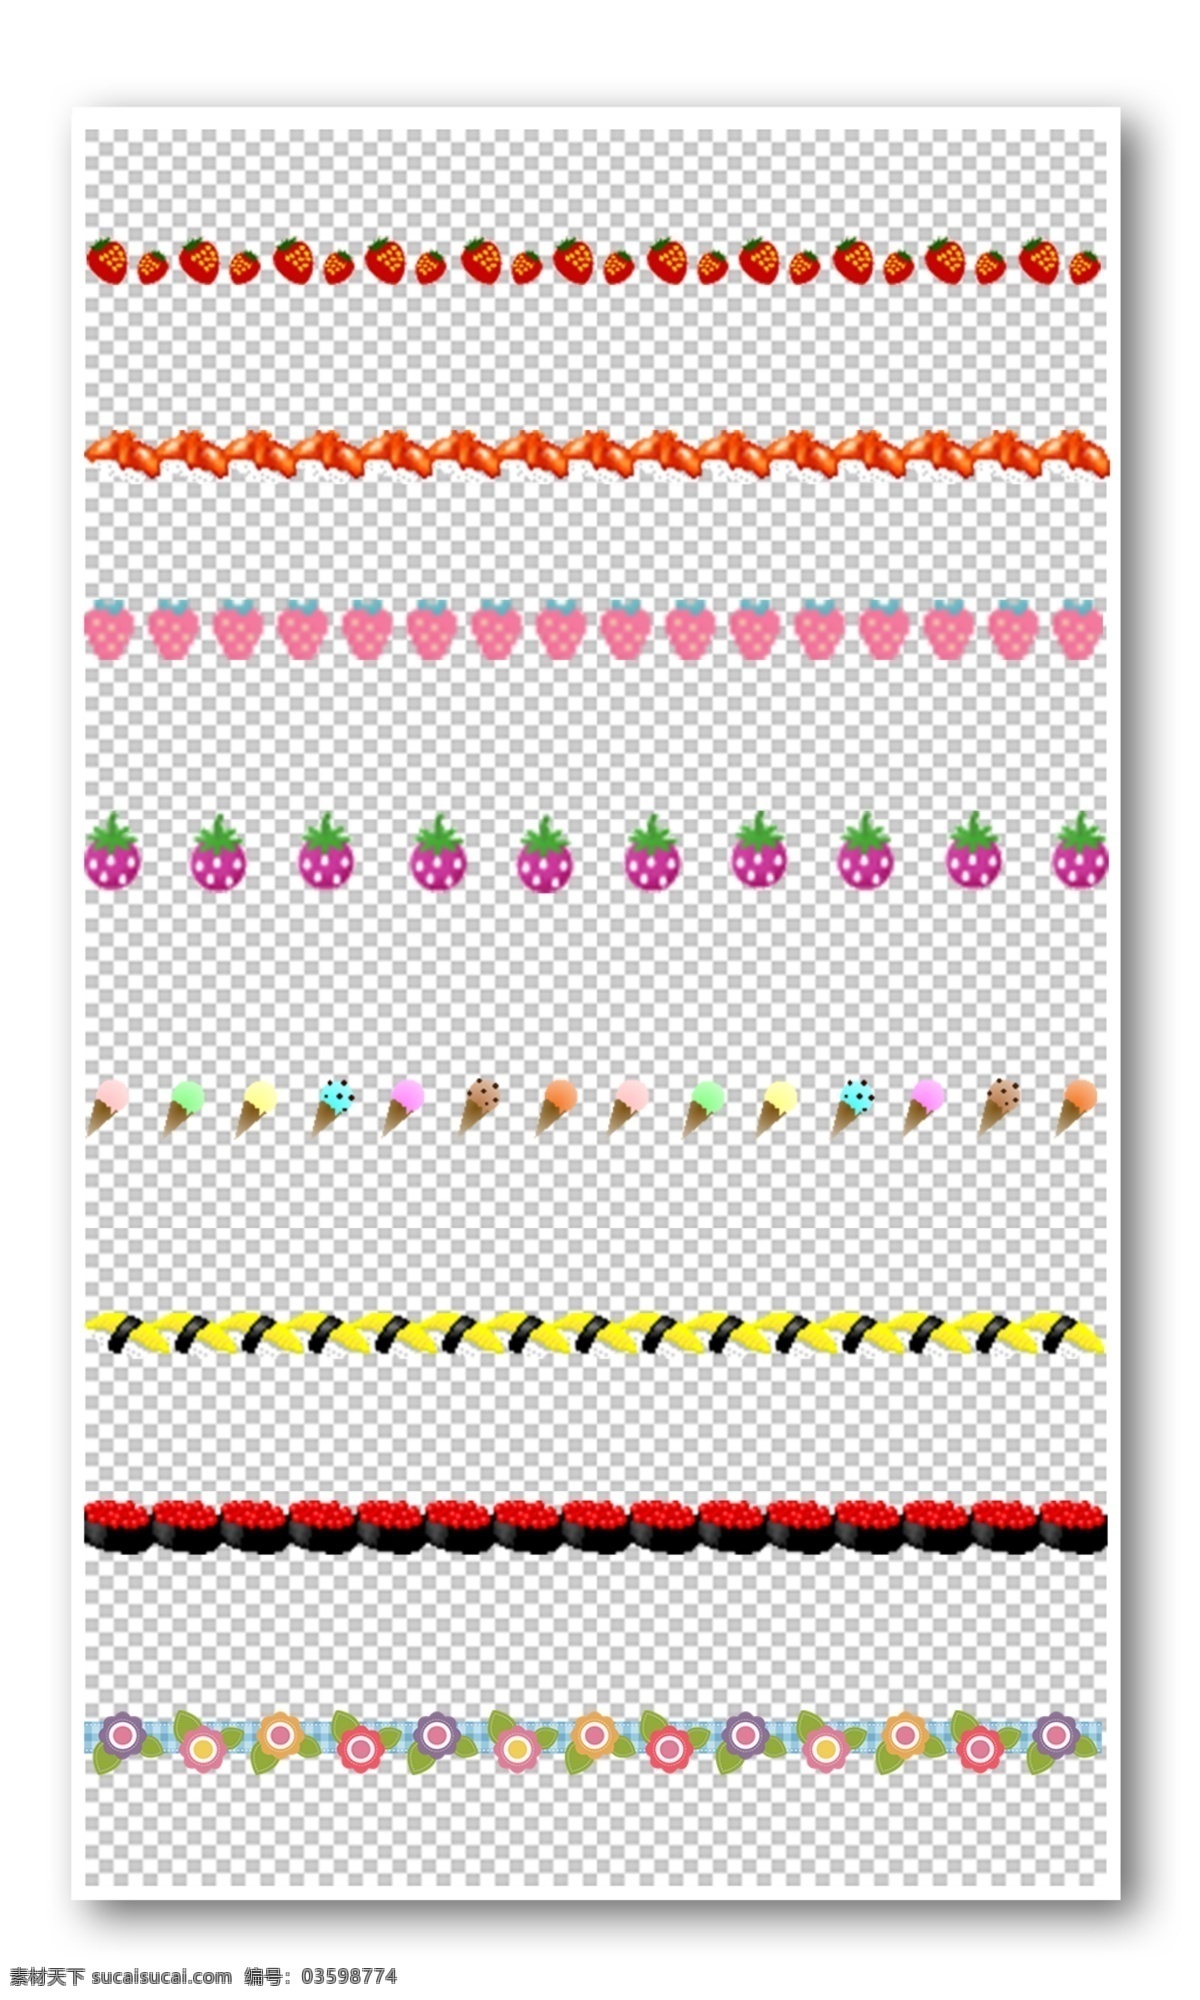 水果 花纹 边框 元素 可爱 动物 花朵 花纹边框 卡通 植物 手绘 小报边框 手抄报边框 免费模版 平面模版 元素模版